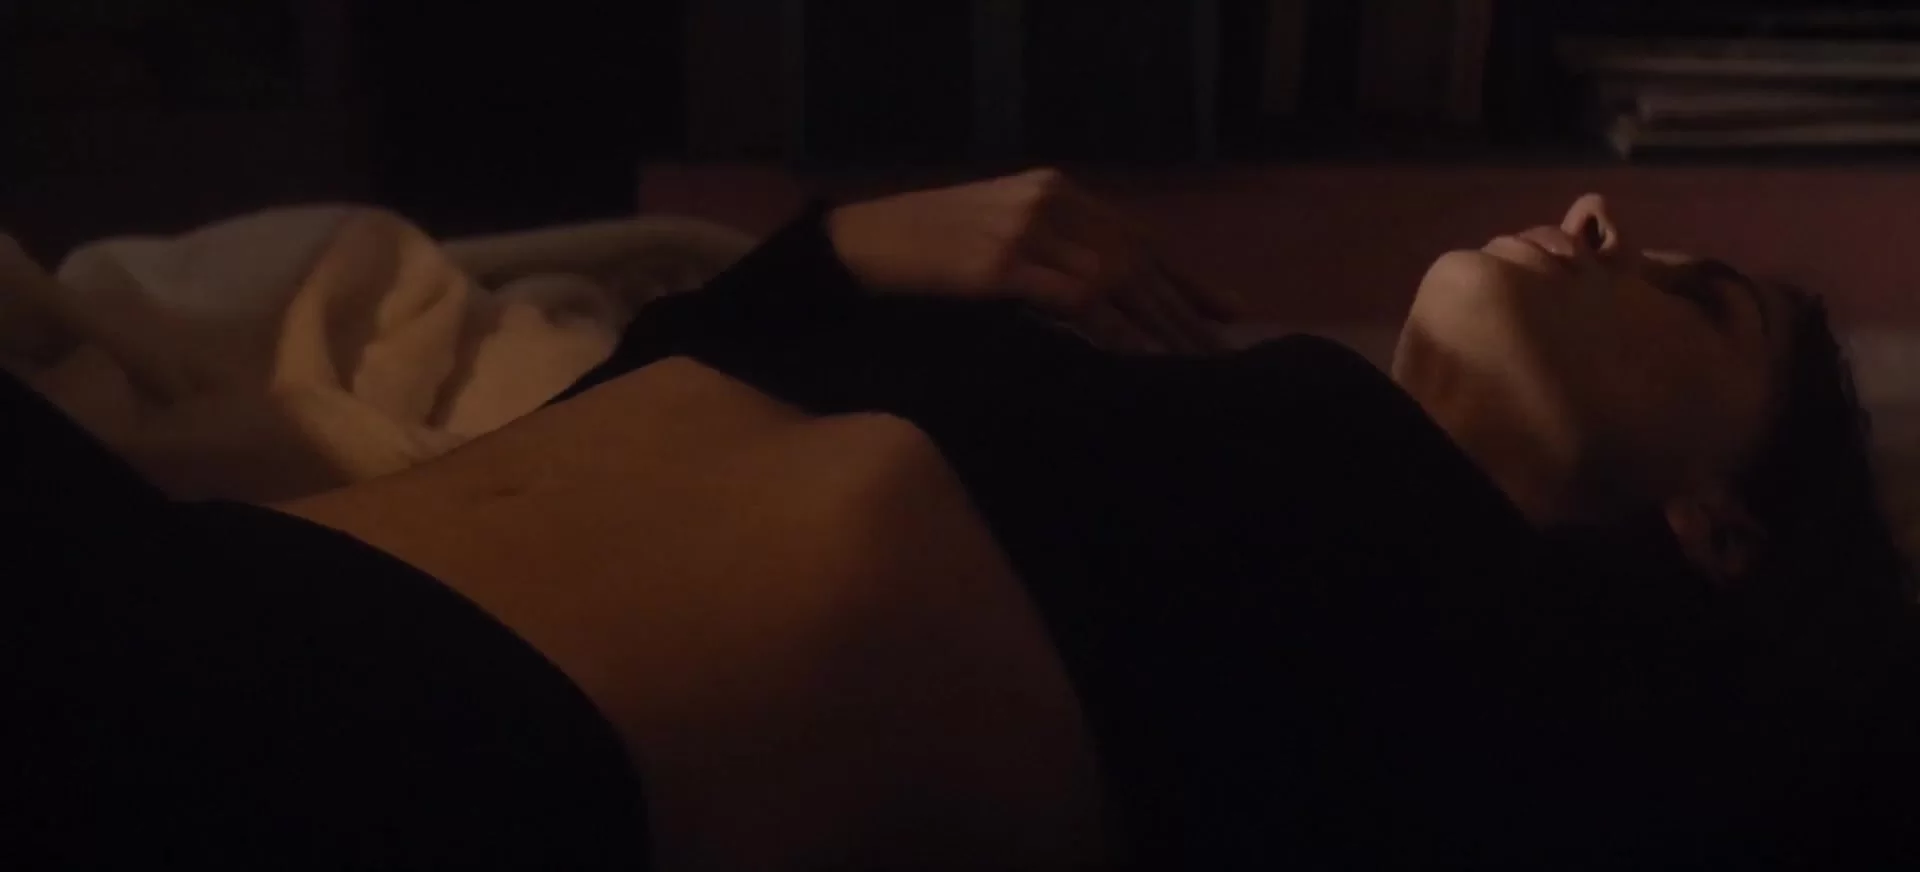 Housewife - Masturbation Scenes in Movies erotic sex scenes picture